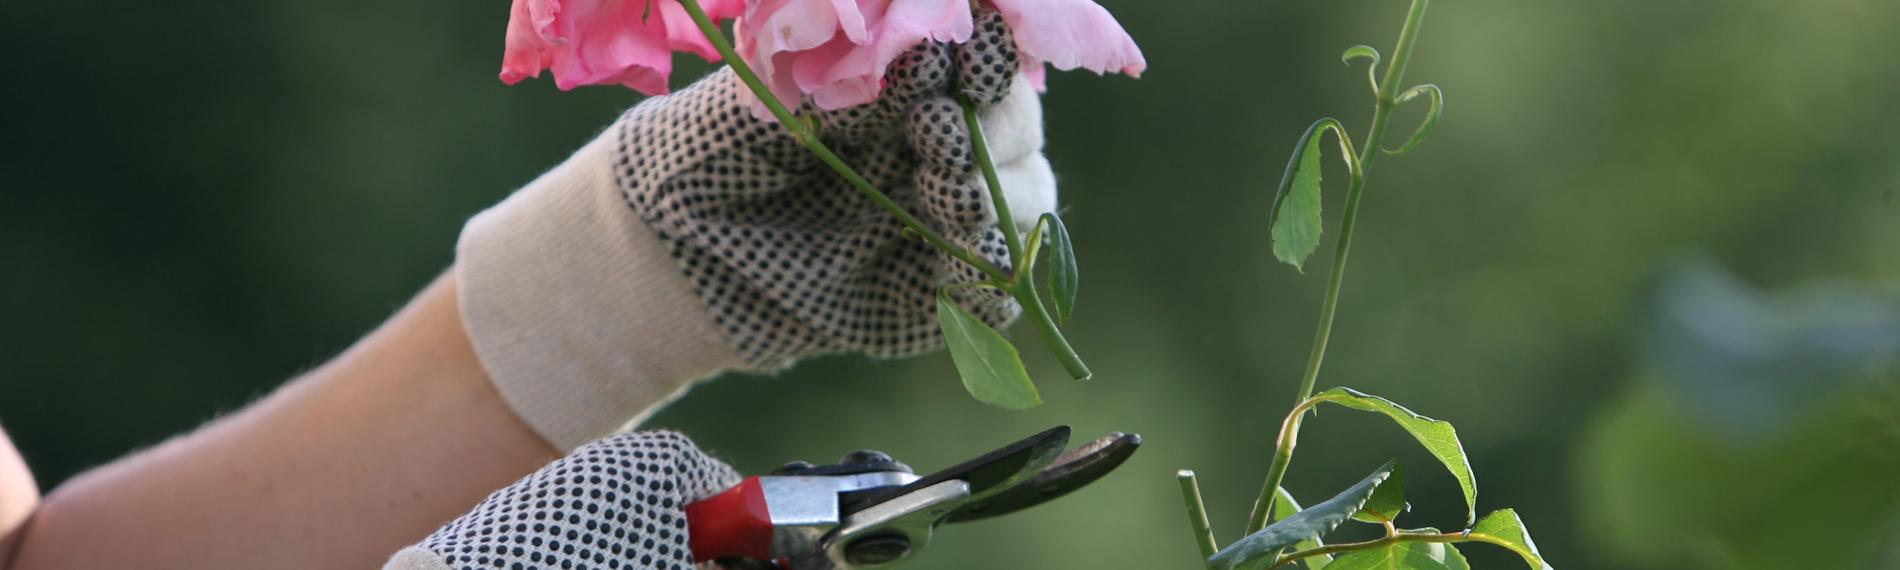 Die Blüten einer pinken Rose werden zurückgeschnitten mit einer Gartenschere.